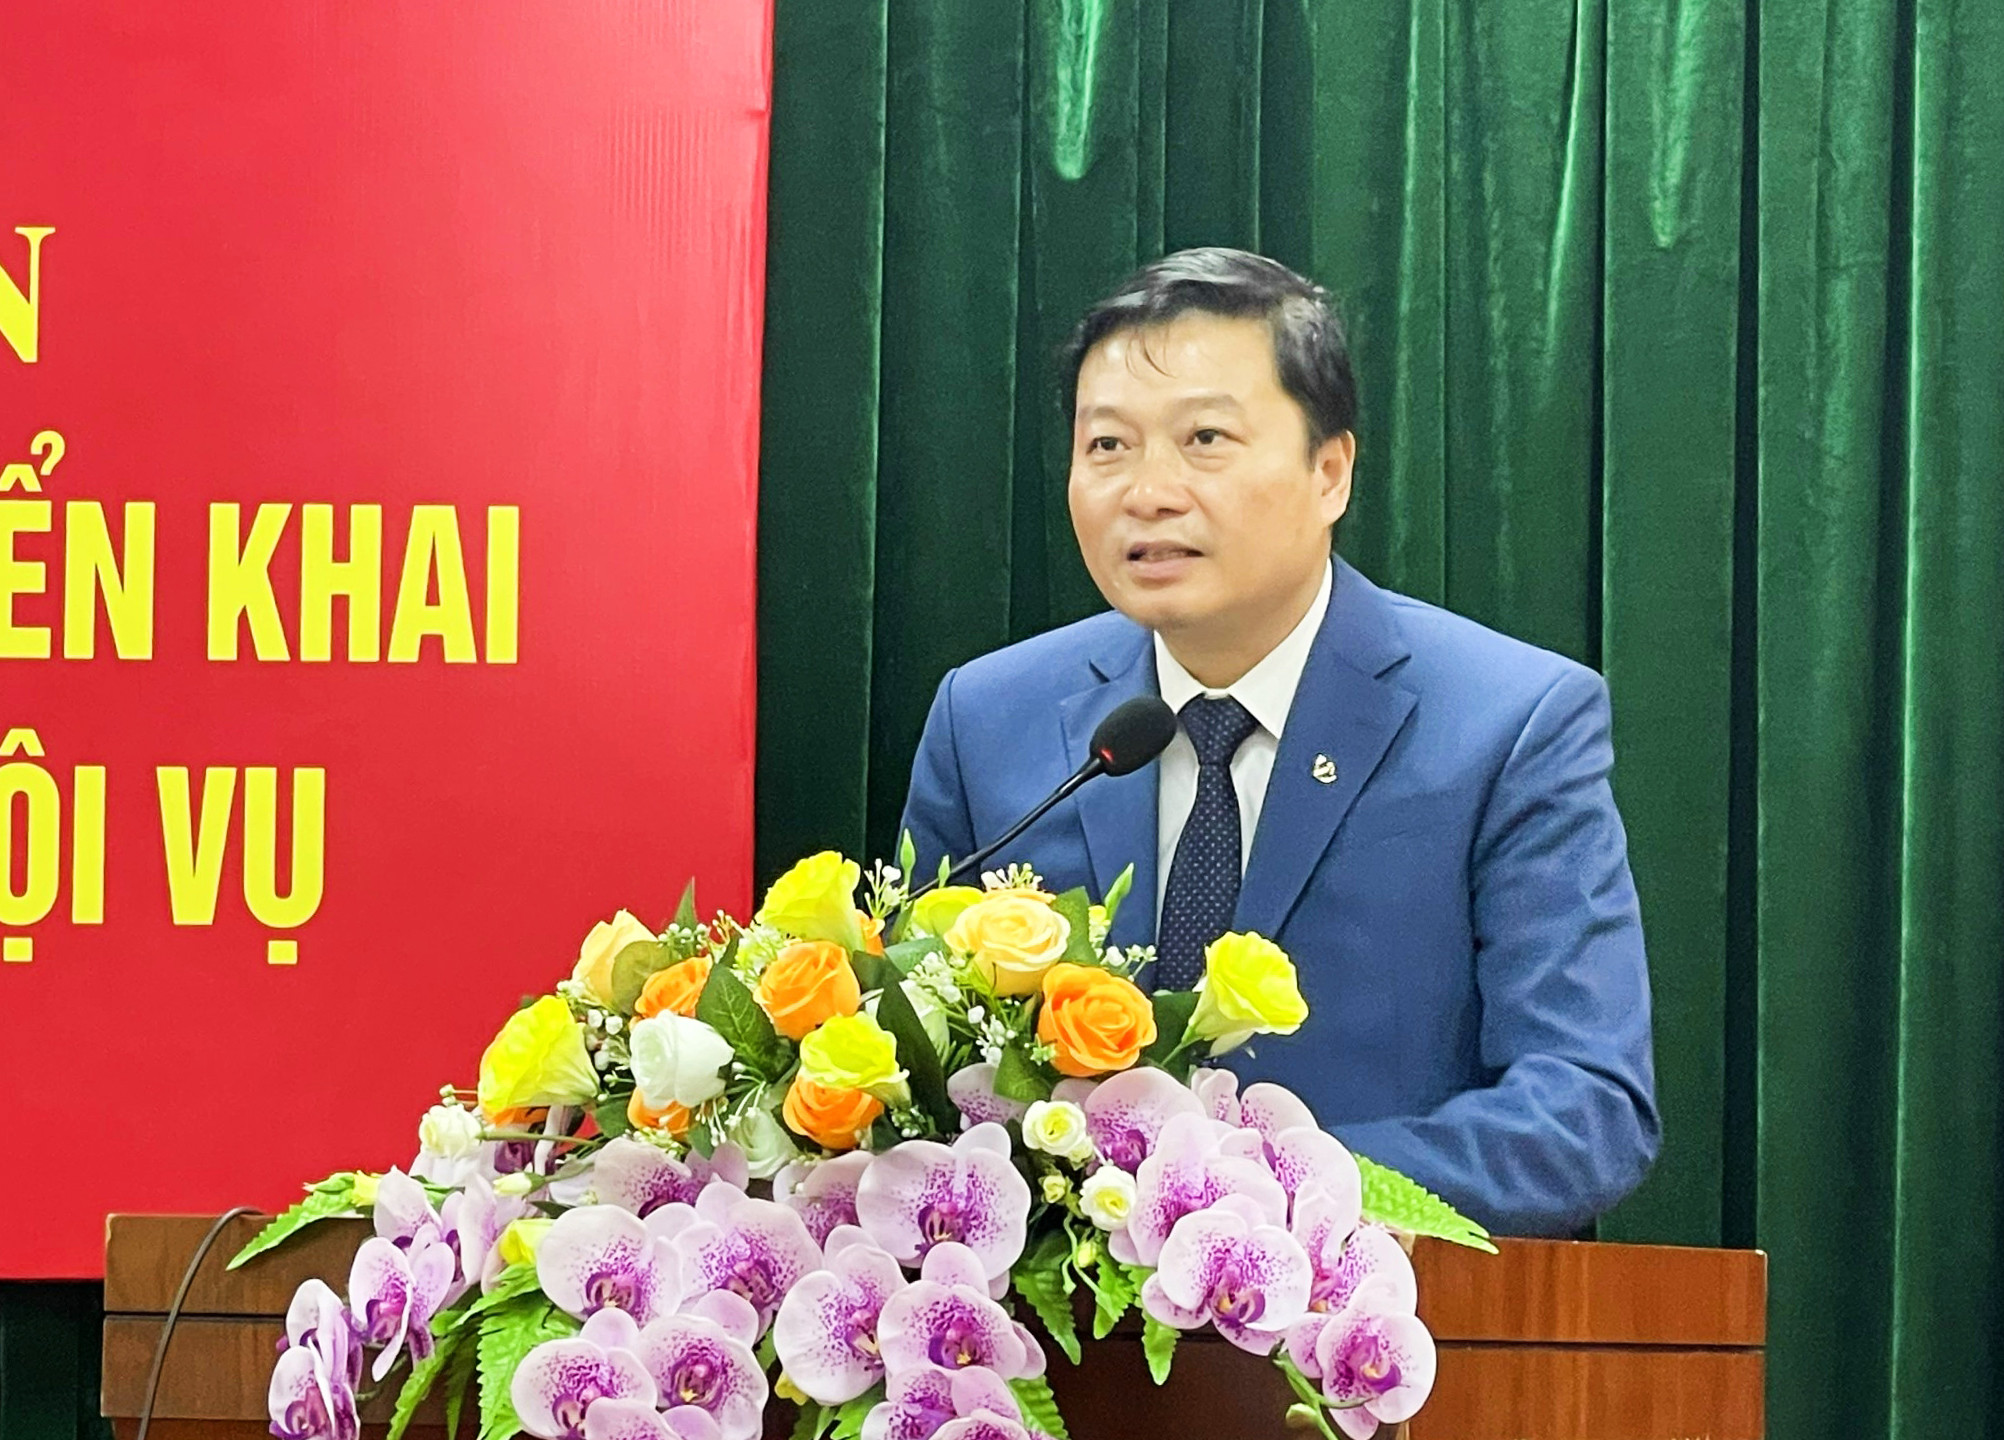 Phó Chủ tịch Thường trực UBND tỉnh Lê Hồng Vinh phát biểu tại hội nghị. Ảnh: Thanh Lê